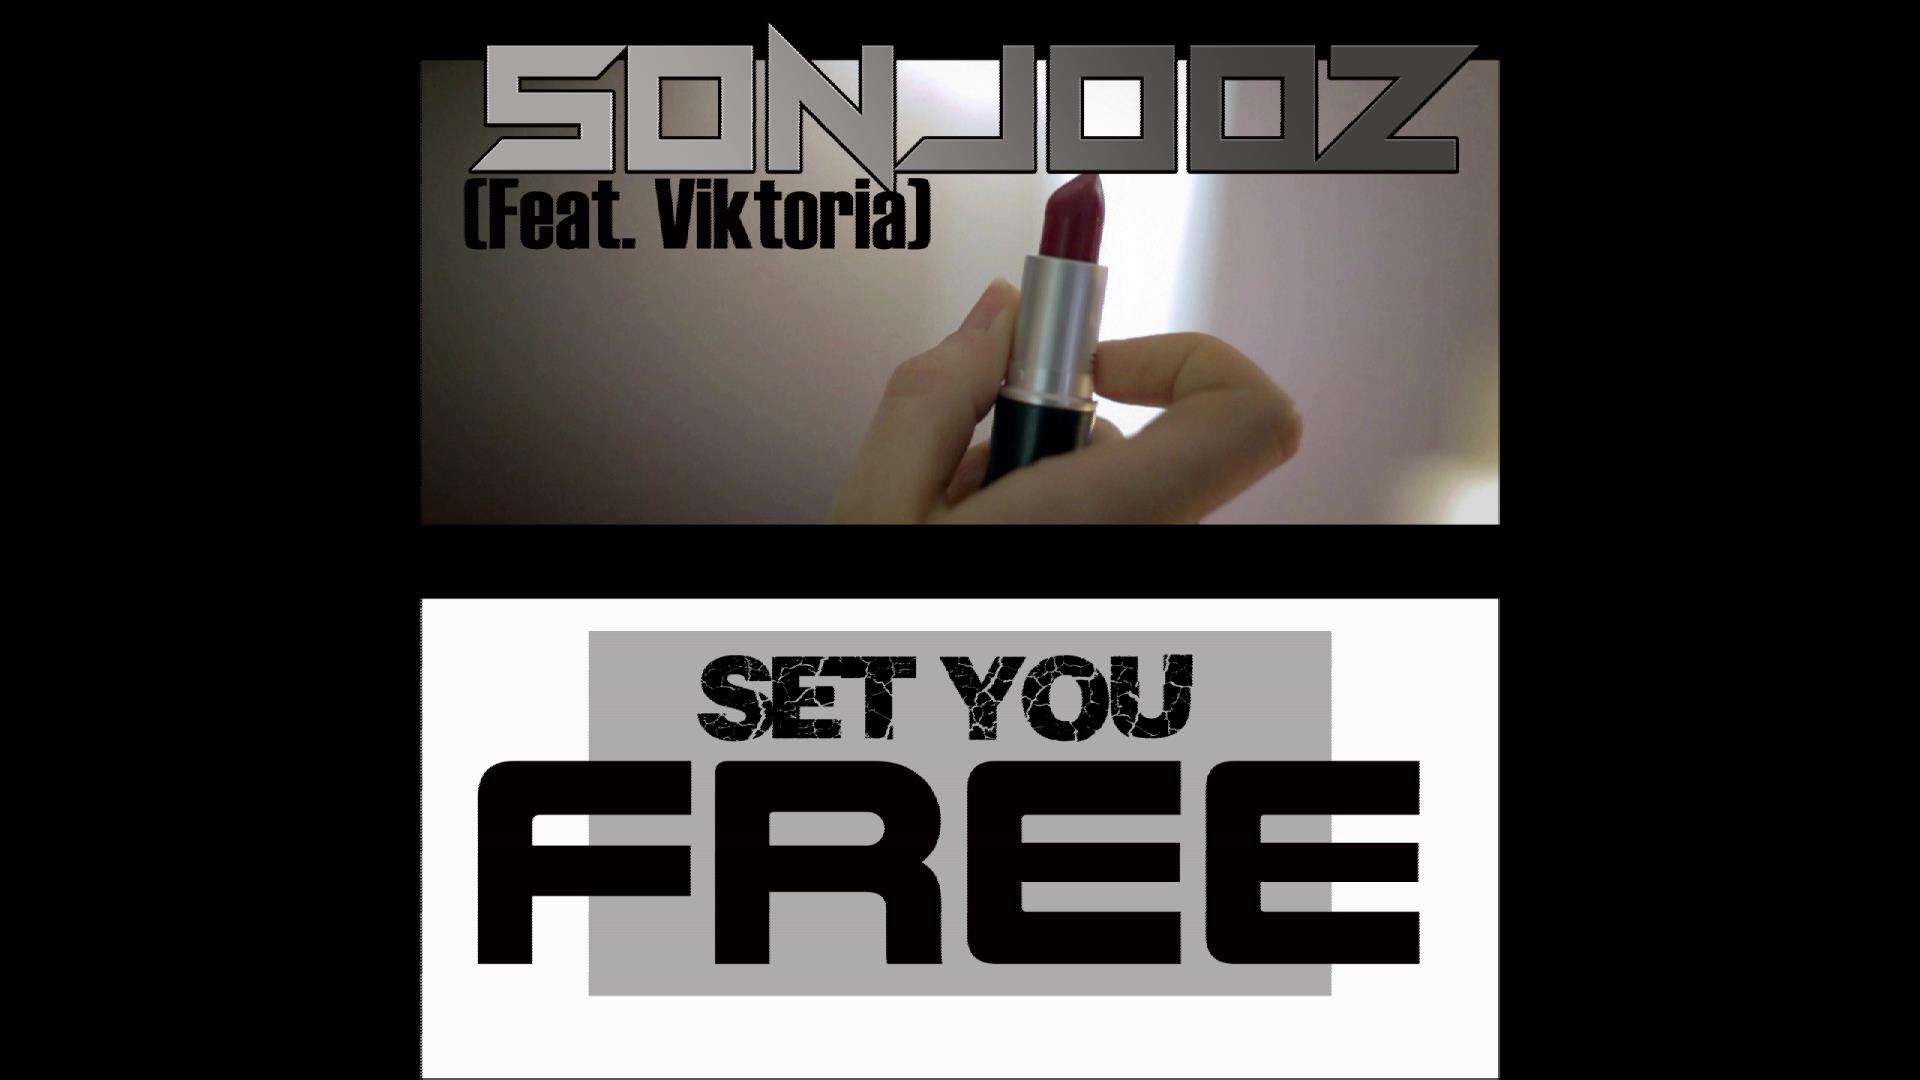  SONJOOZ – “Set You Free” Feat. Viktoria & Sticky Bud